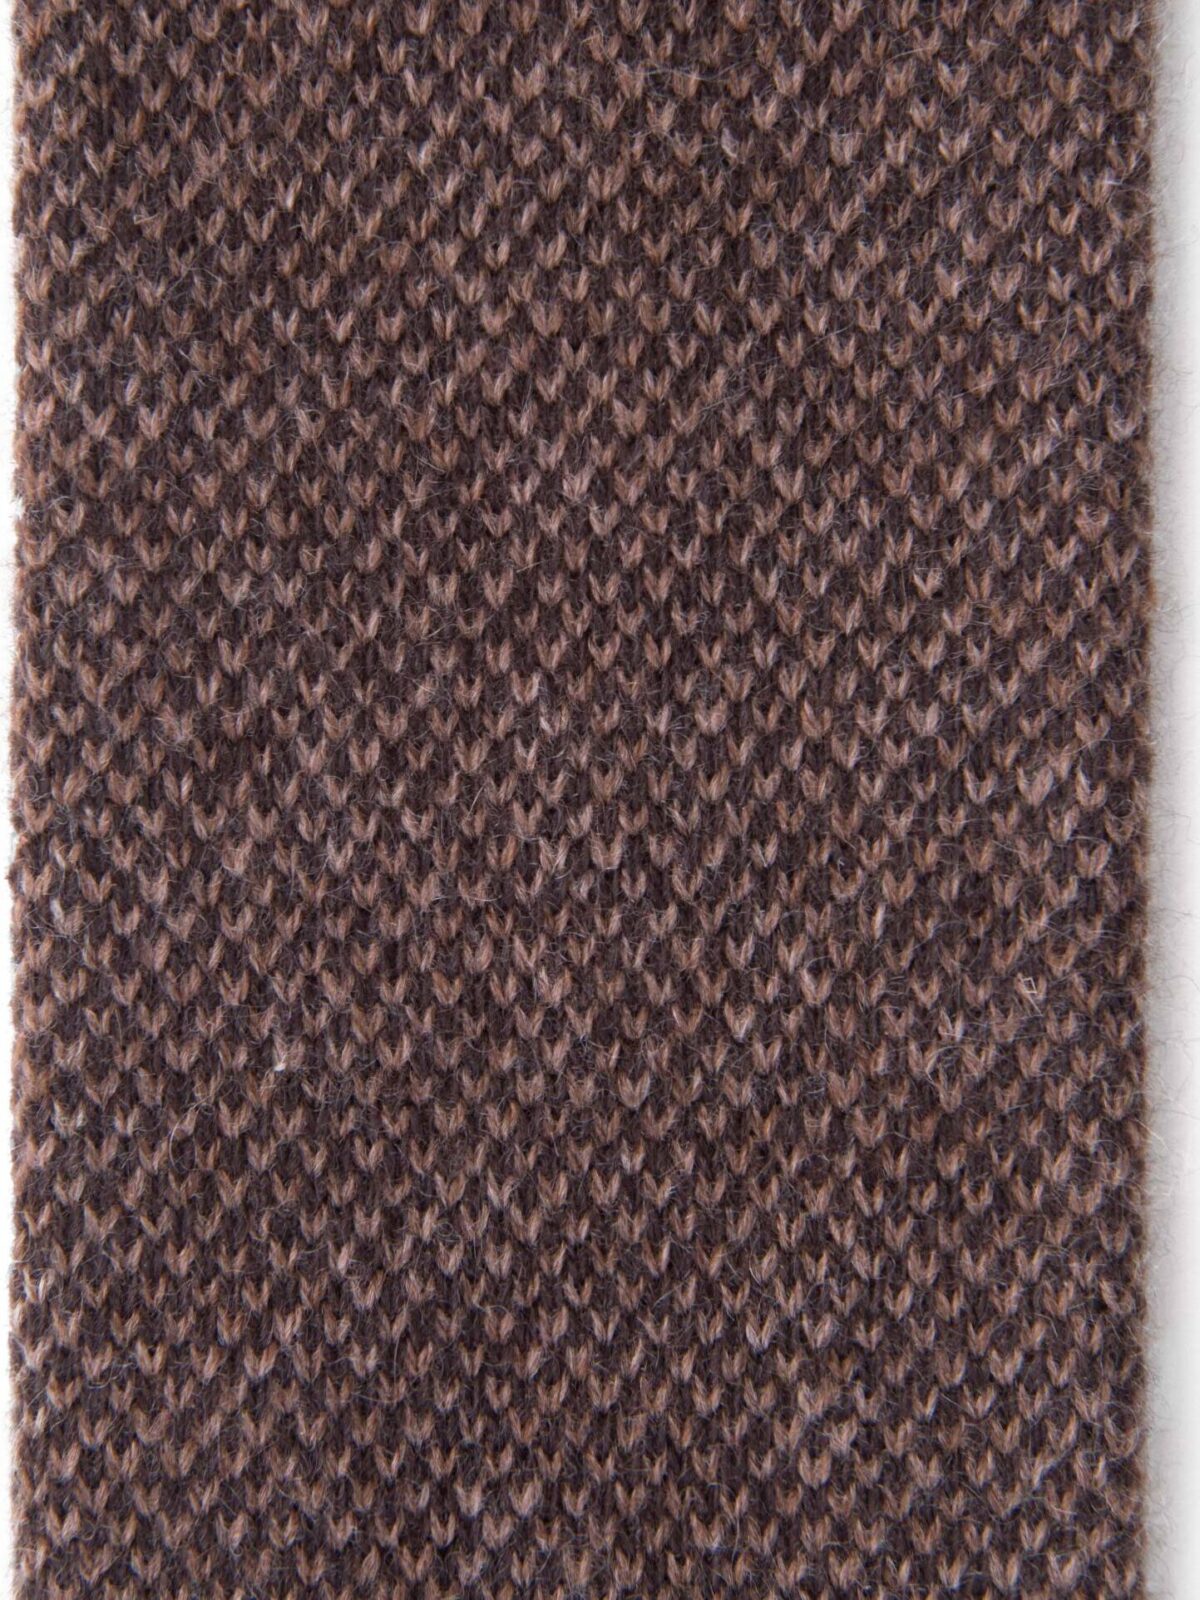 Brown Birdseye Cashmere Knit Tie